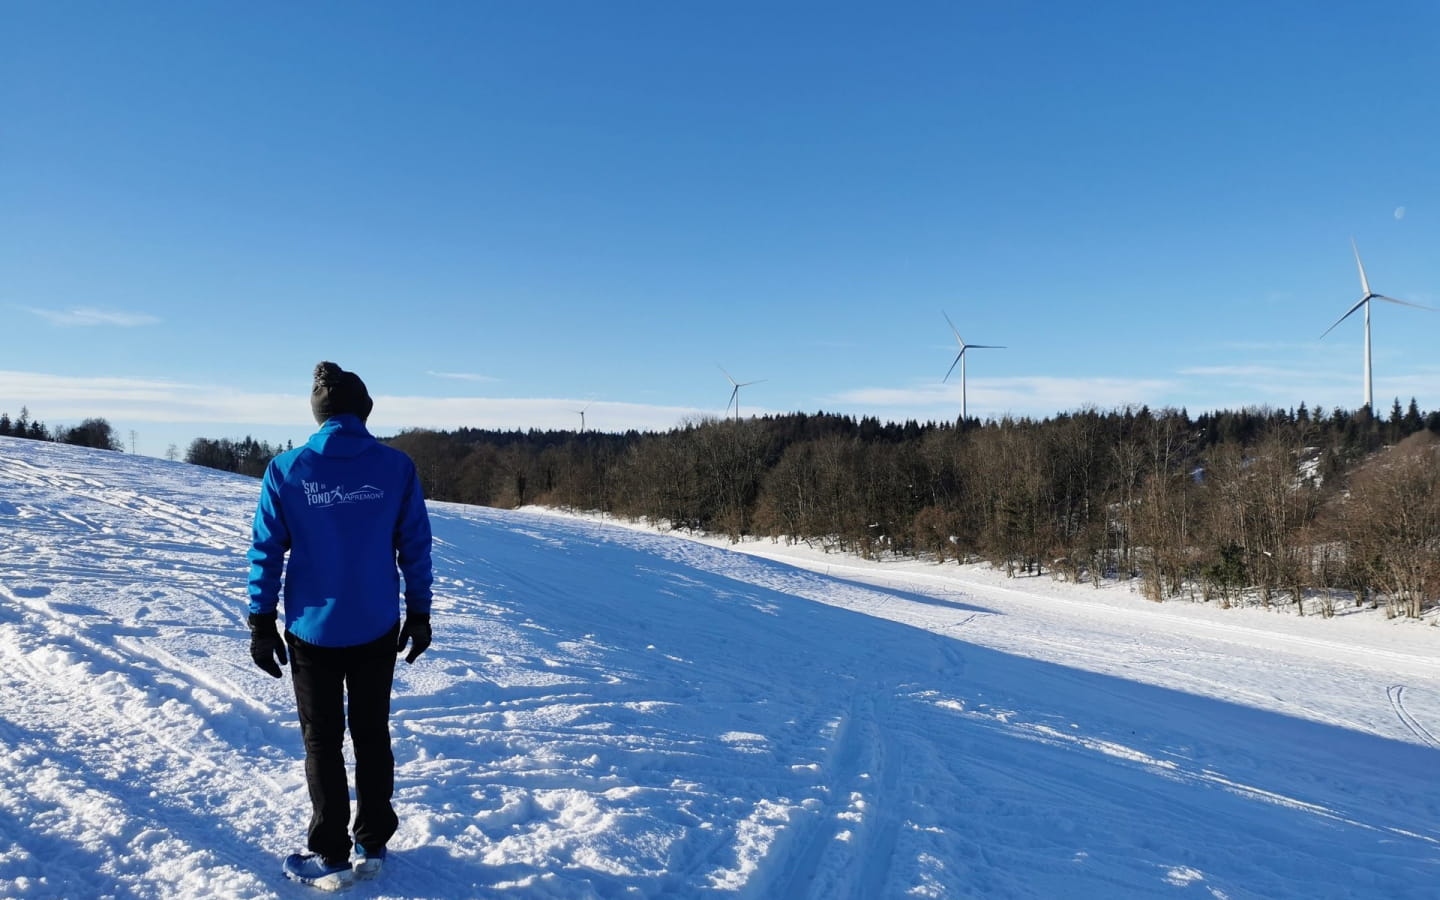 Piste verte de ski nordique - Les Prés d’en Haut